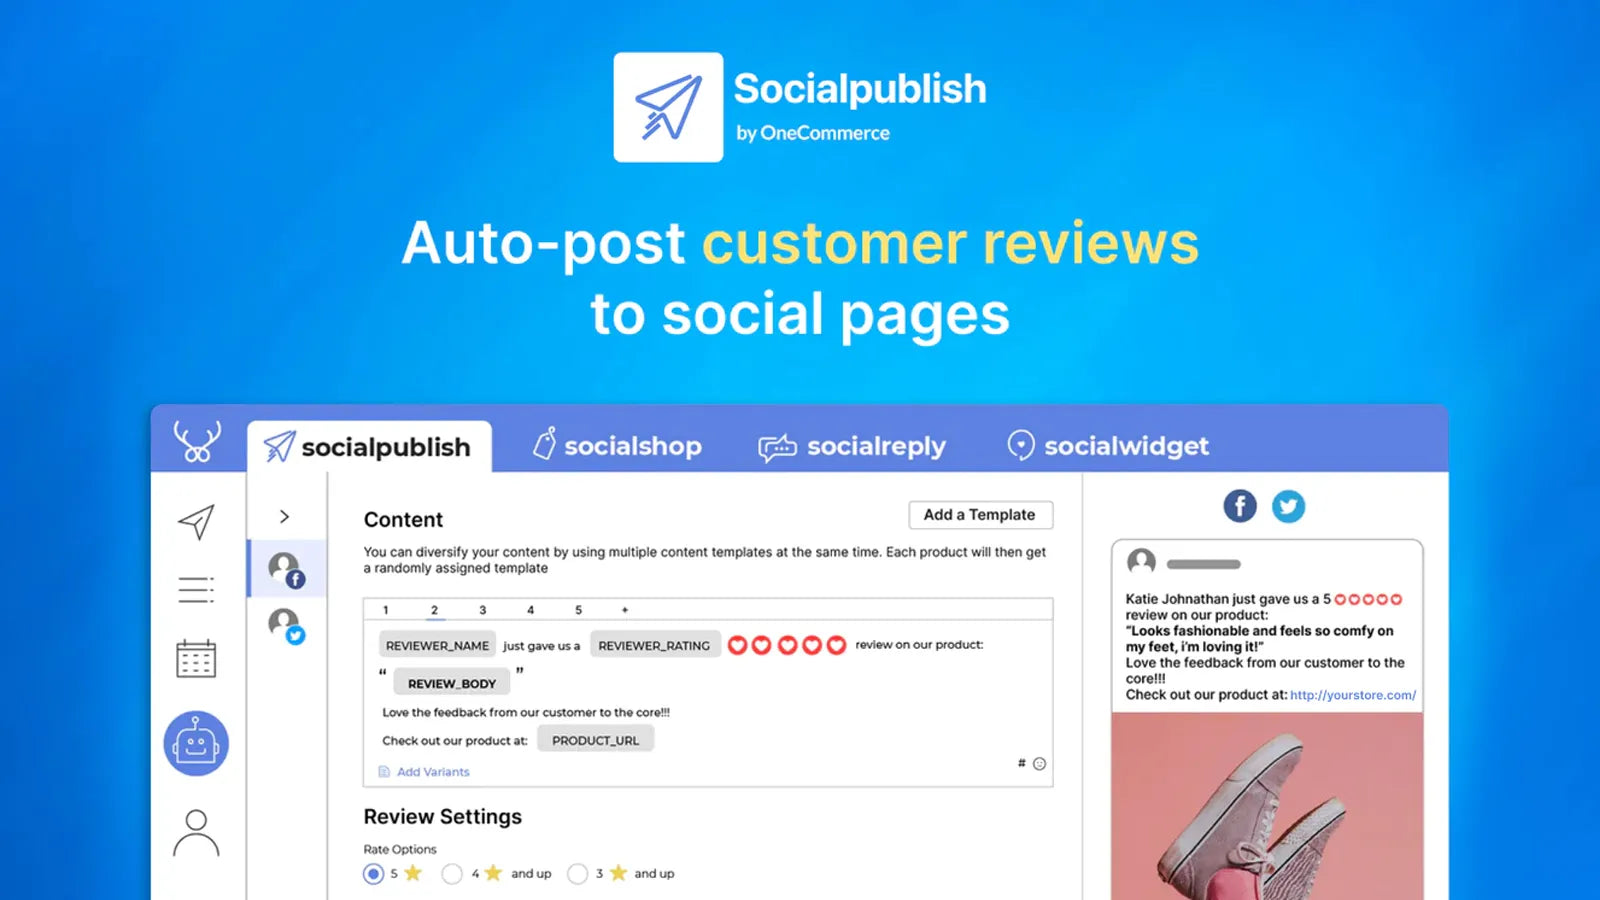 Publique automaticamente as avaliações de seus clientes nas páginas sociais